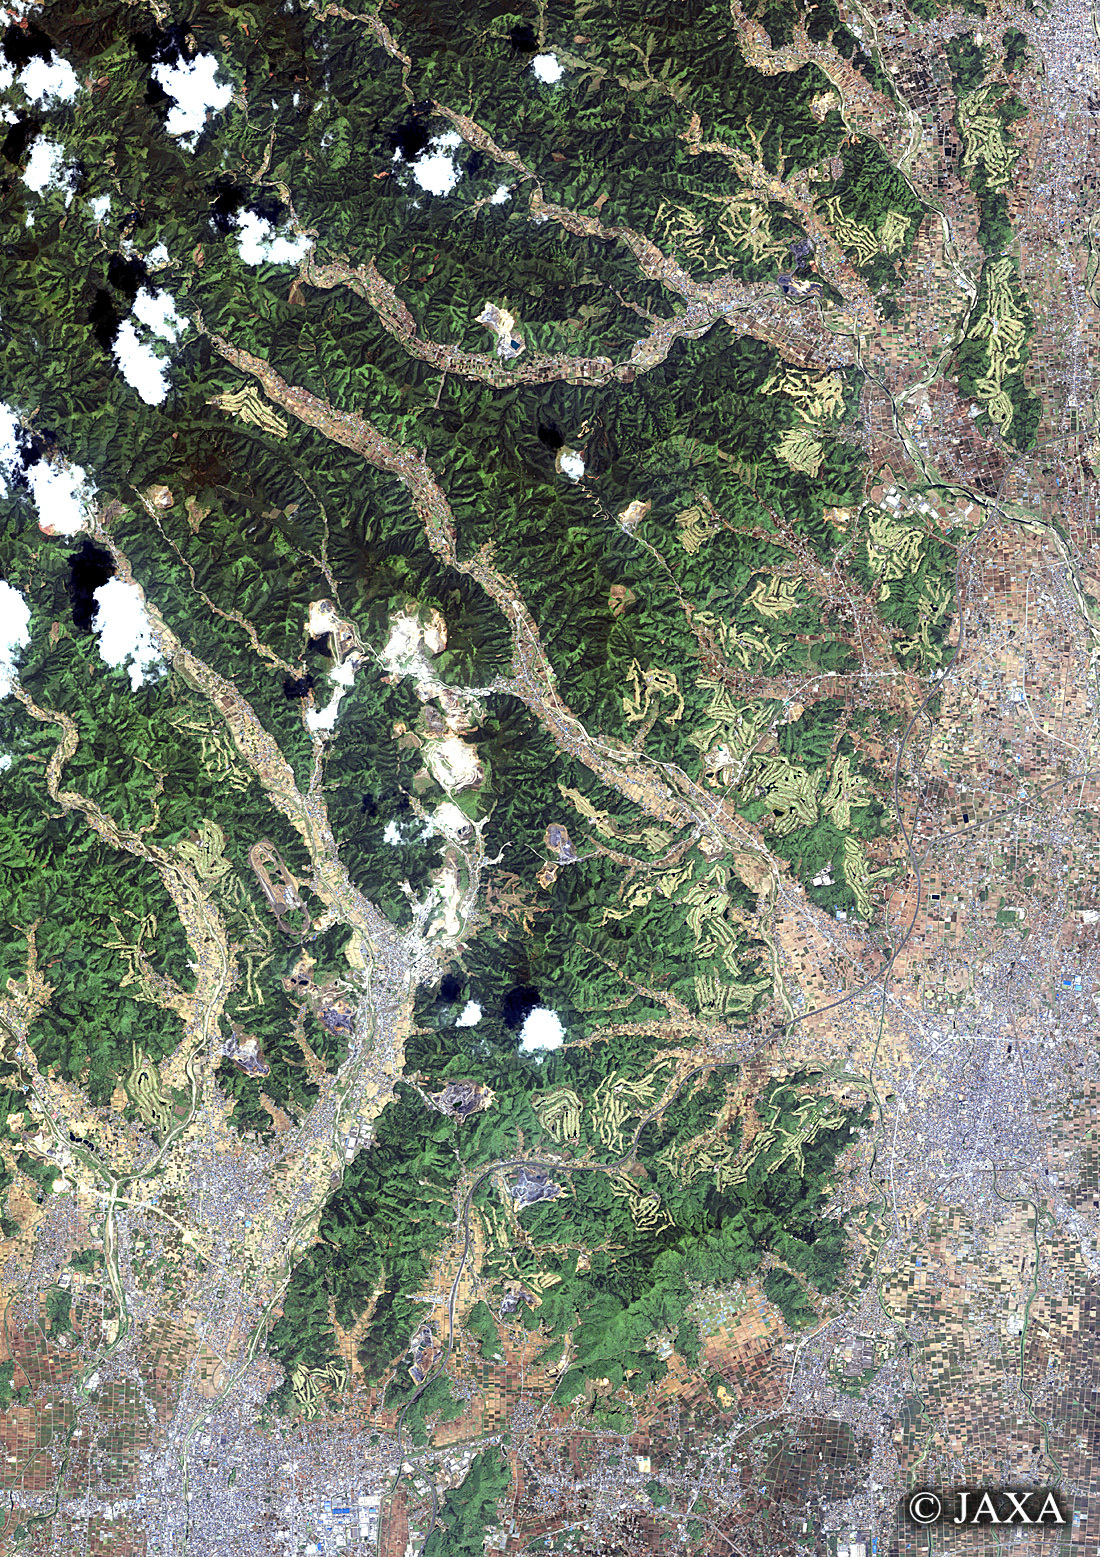 だいちから見た日本の都市 足尾山地南東部周辺:衛星画像